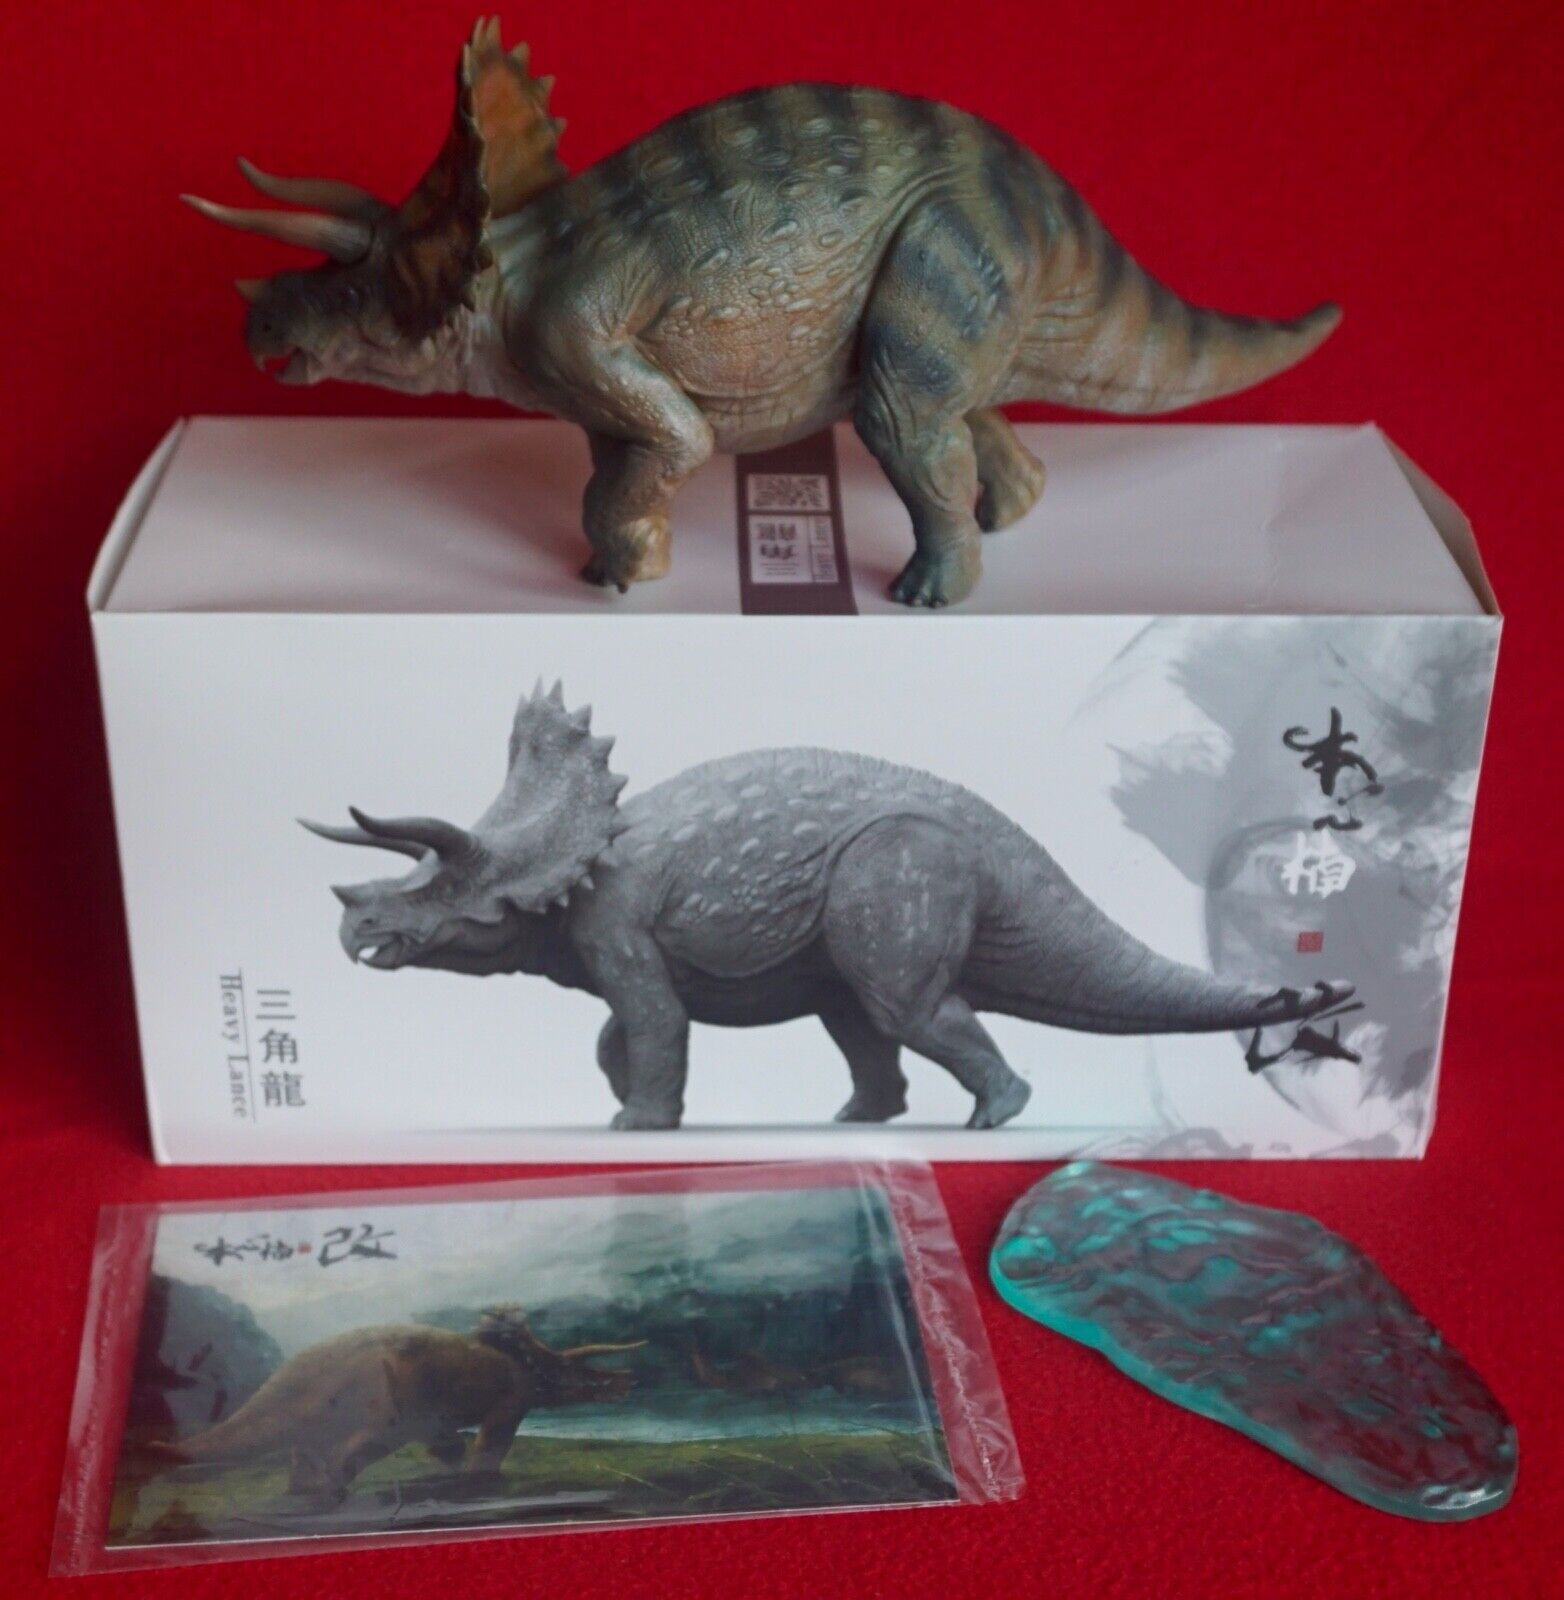 Nanmu Triceratops Heavy Lance - 1/35 - w box, base & info card